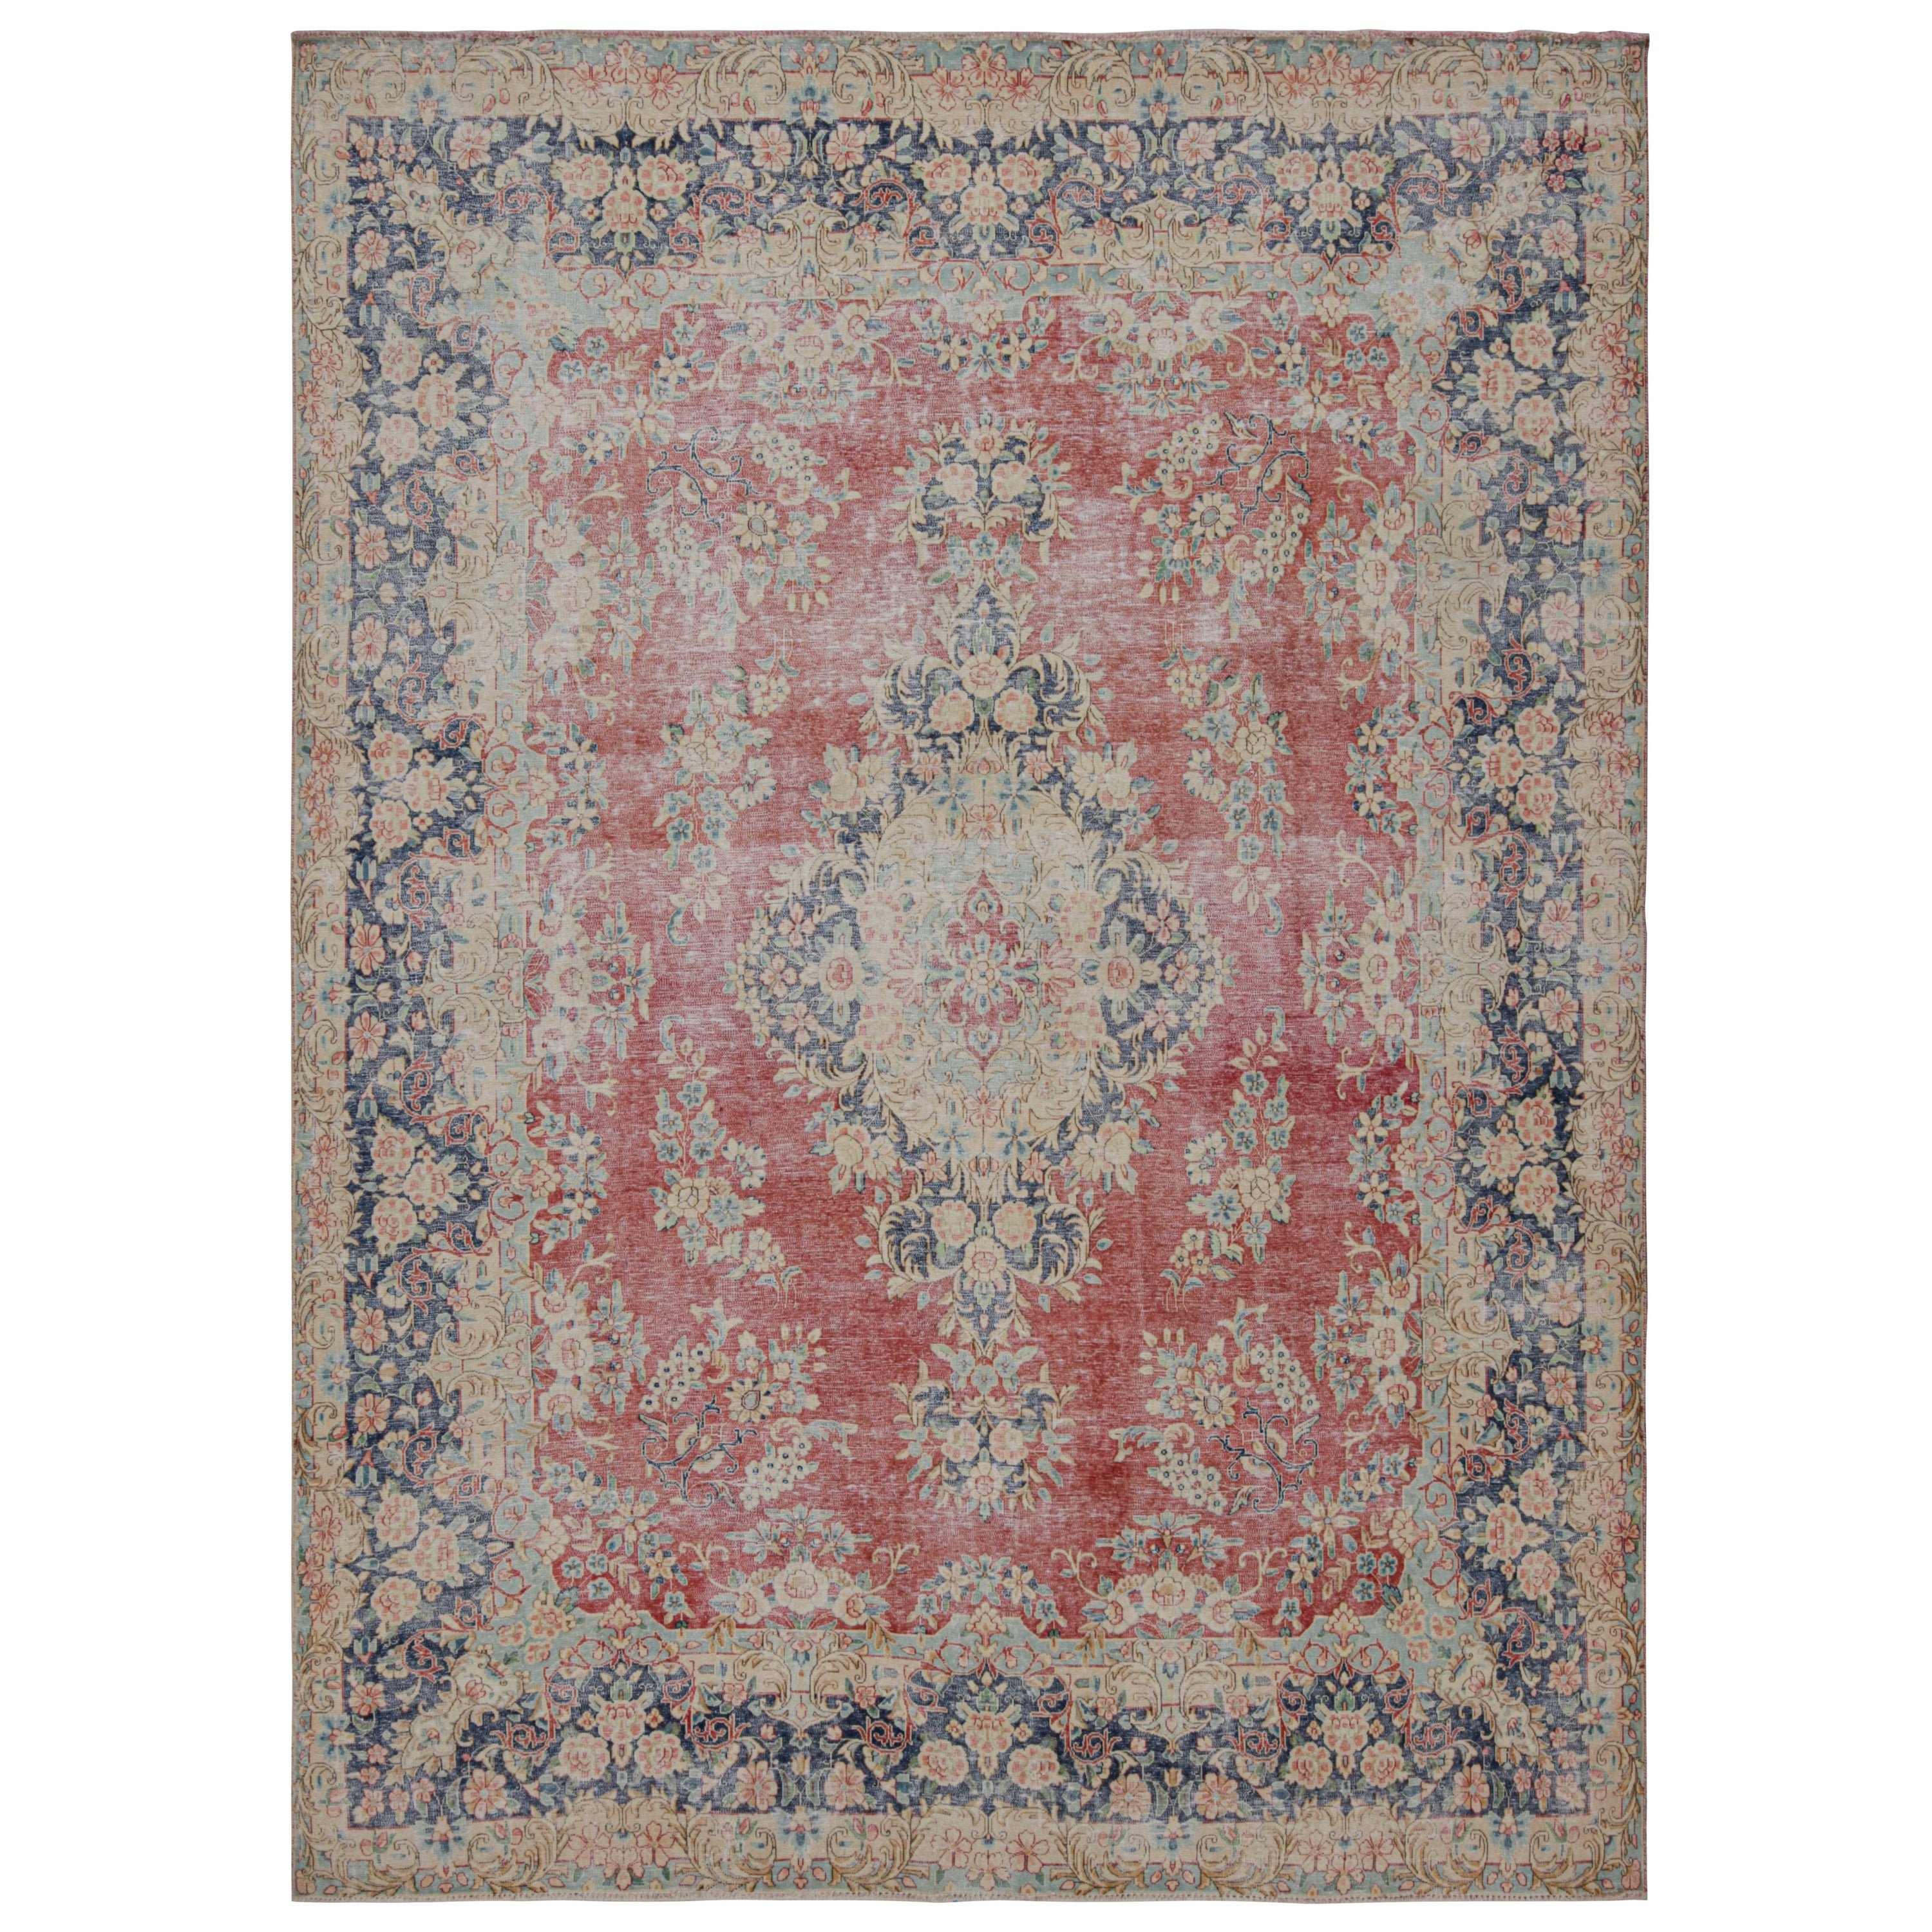 Vintage Persian Kerman rug in Red, Blue and Beige Floral Patterns by Rug & Kilim